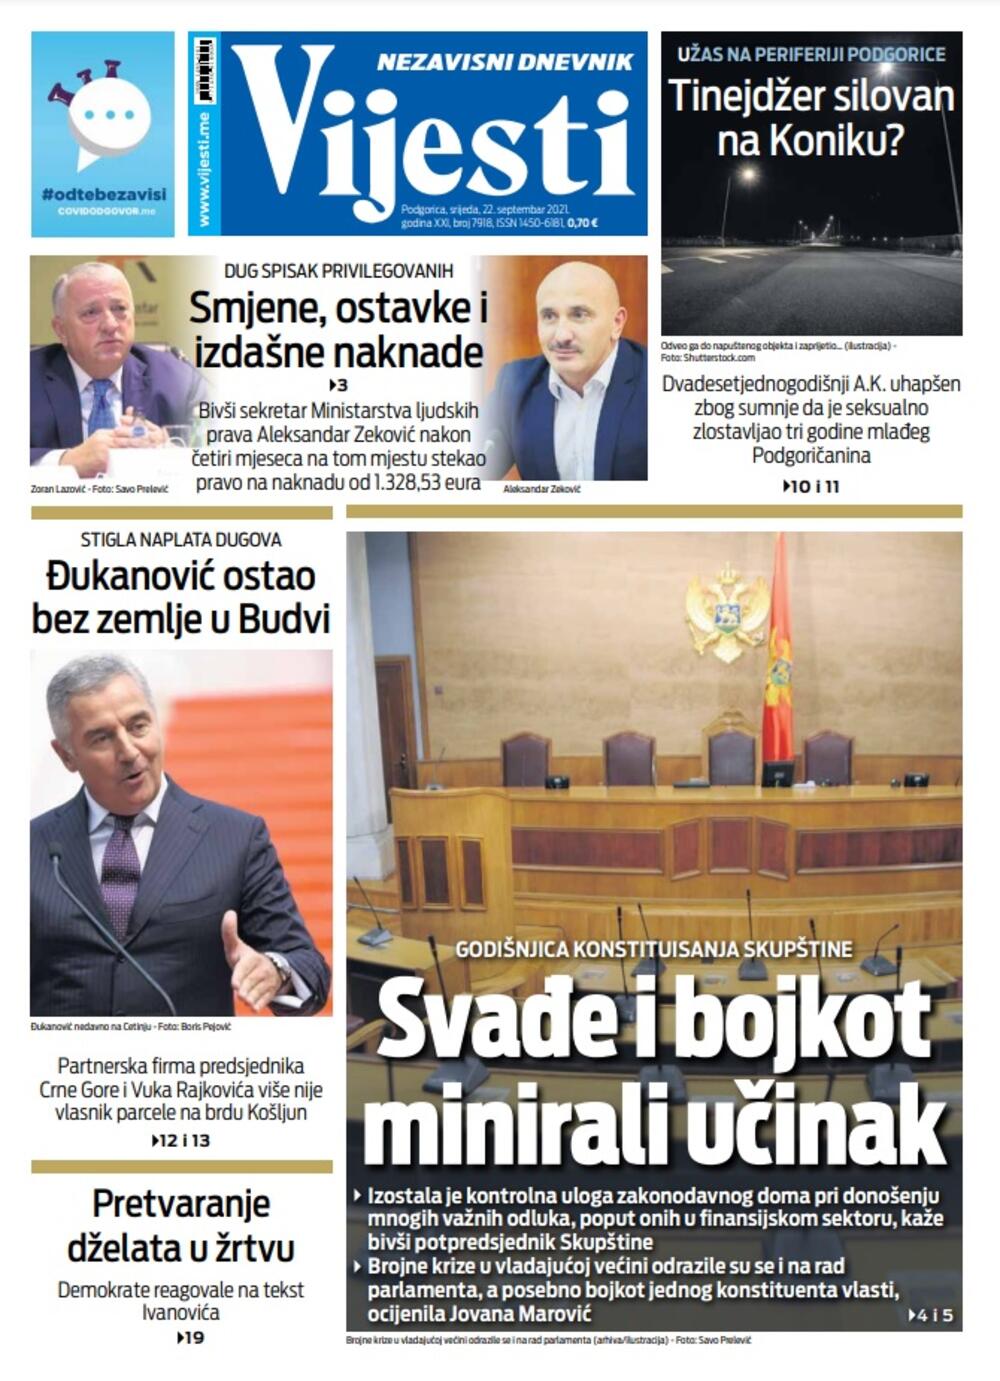 Naslovna strana "Vijesti" za 22. septembar 2021., Foto: Vijesti